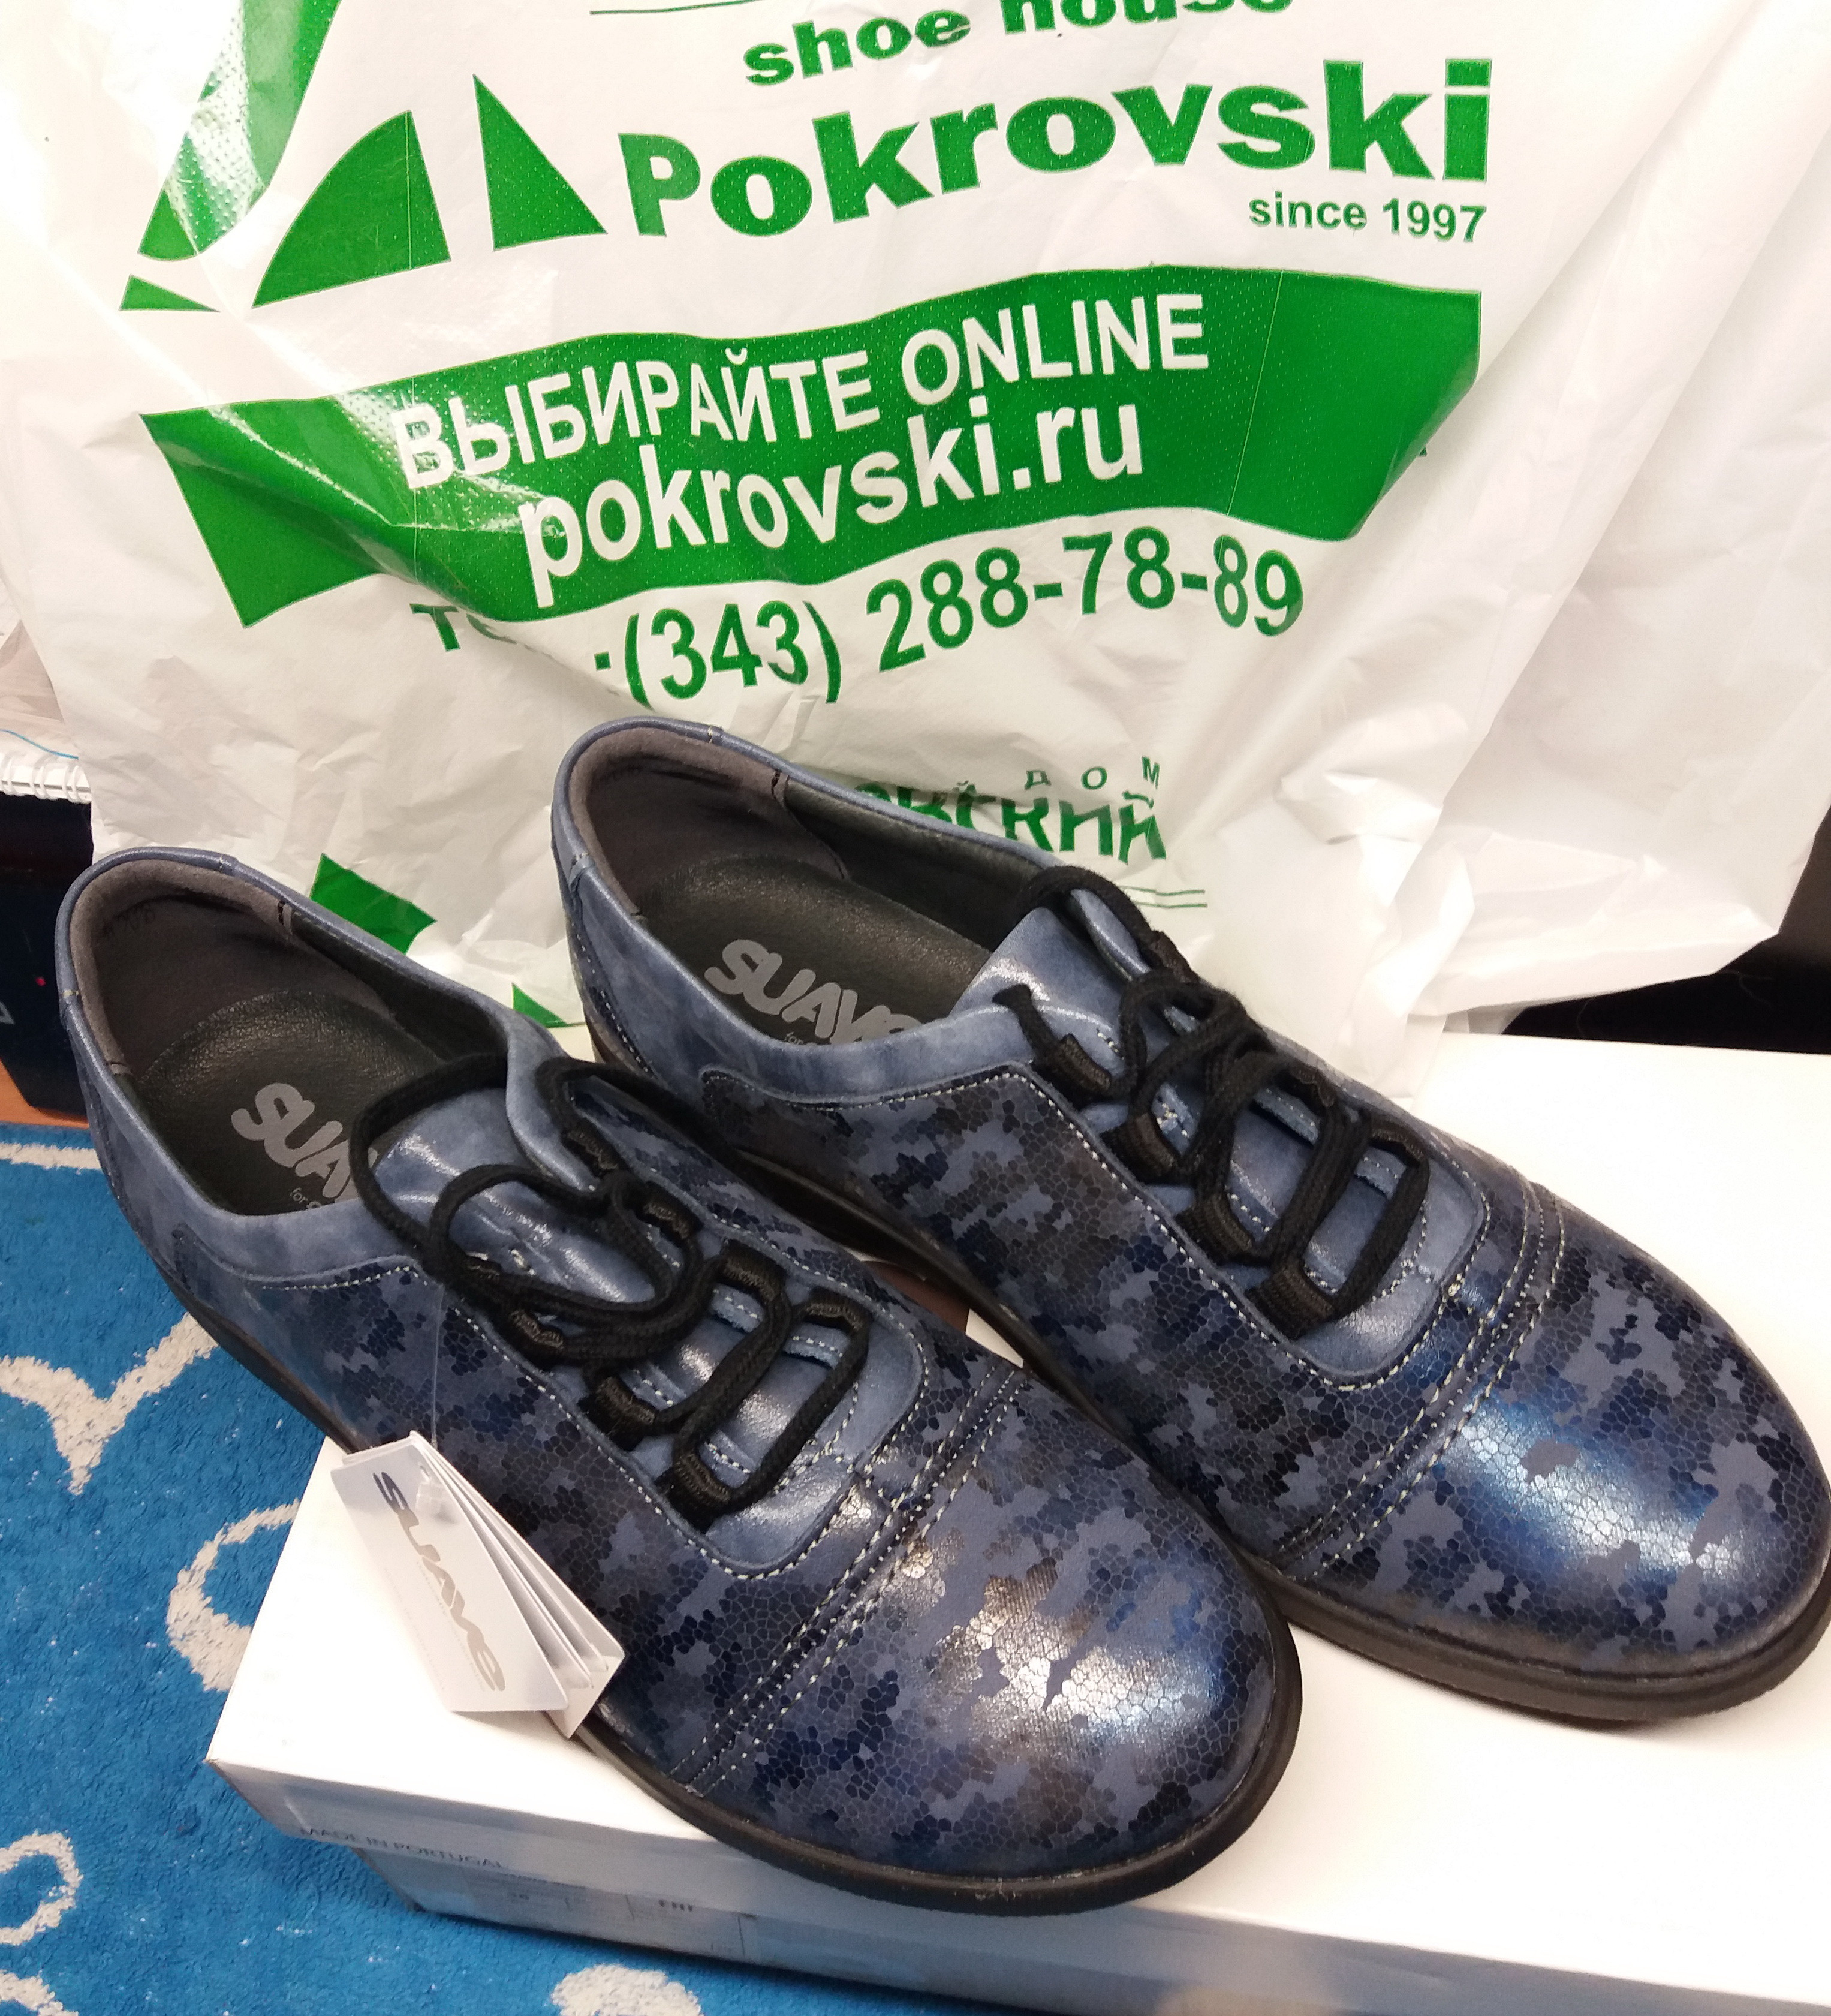 Покровский обувь екатеринбург